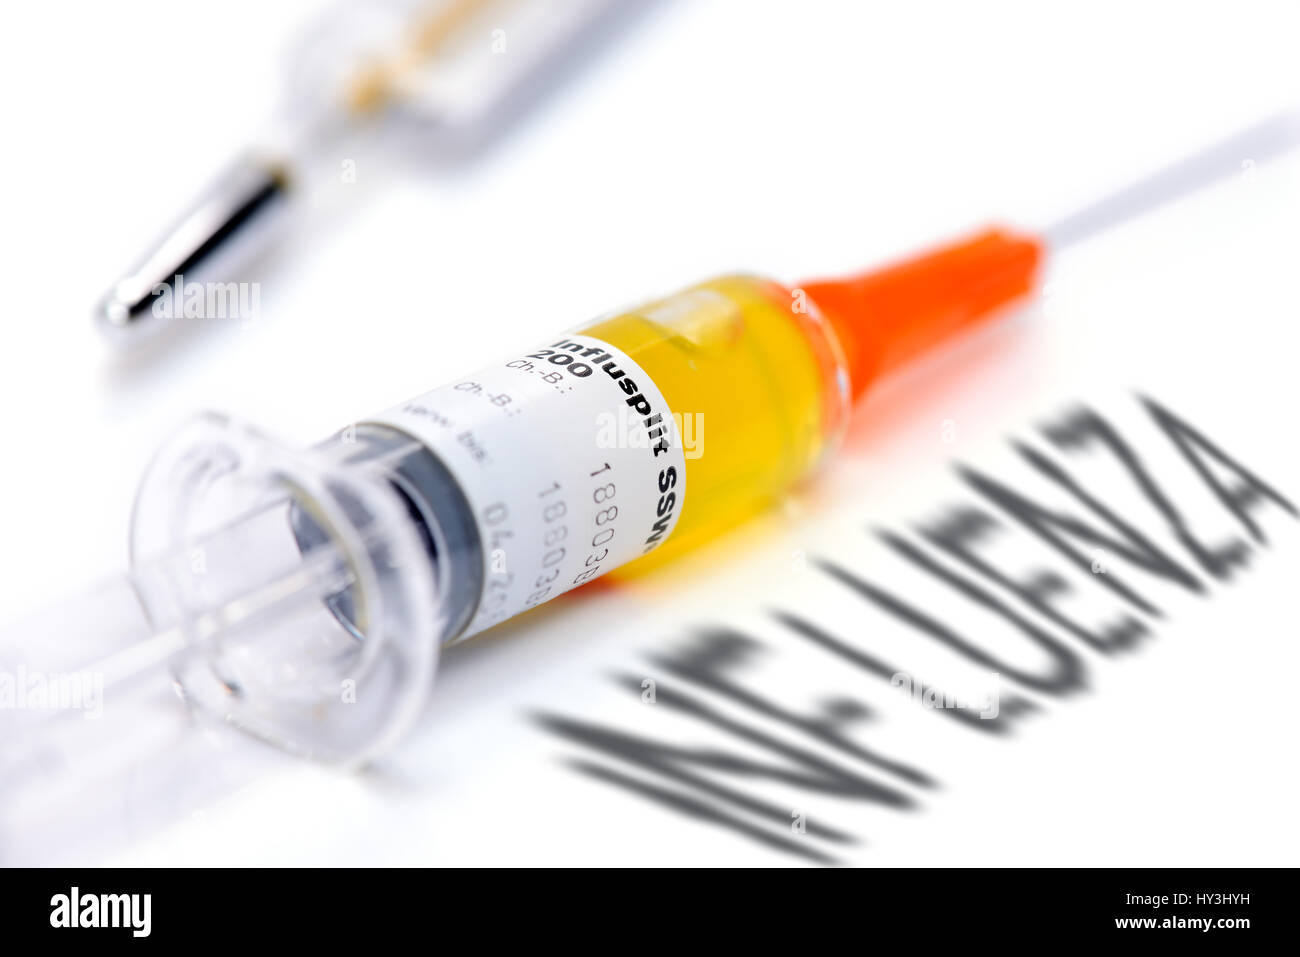 Vaccination syringe and Influenza stroke, vaccination against influenza, Impfspritze und Influenza-Schriftzug, Impfung gegen Grippe Stock Photo